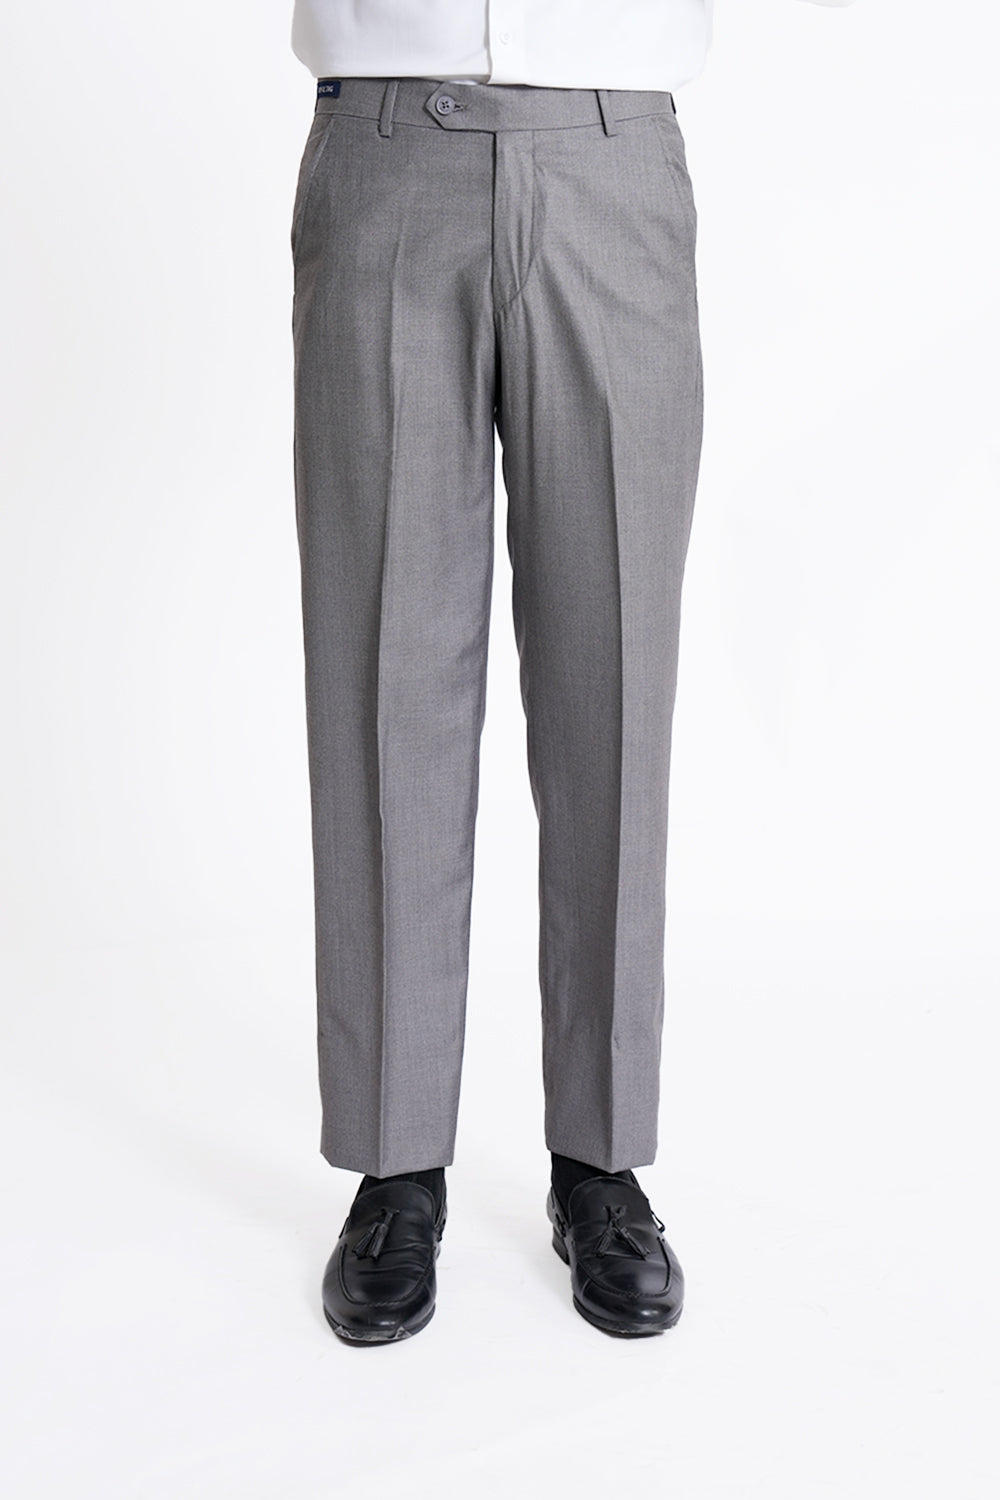 Grey Smart Fit Plain Dress Pant SDP240203-GR